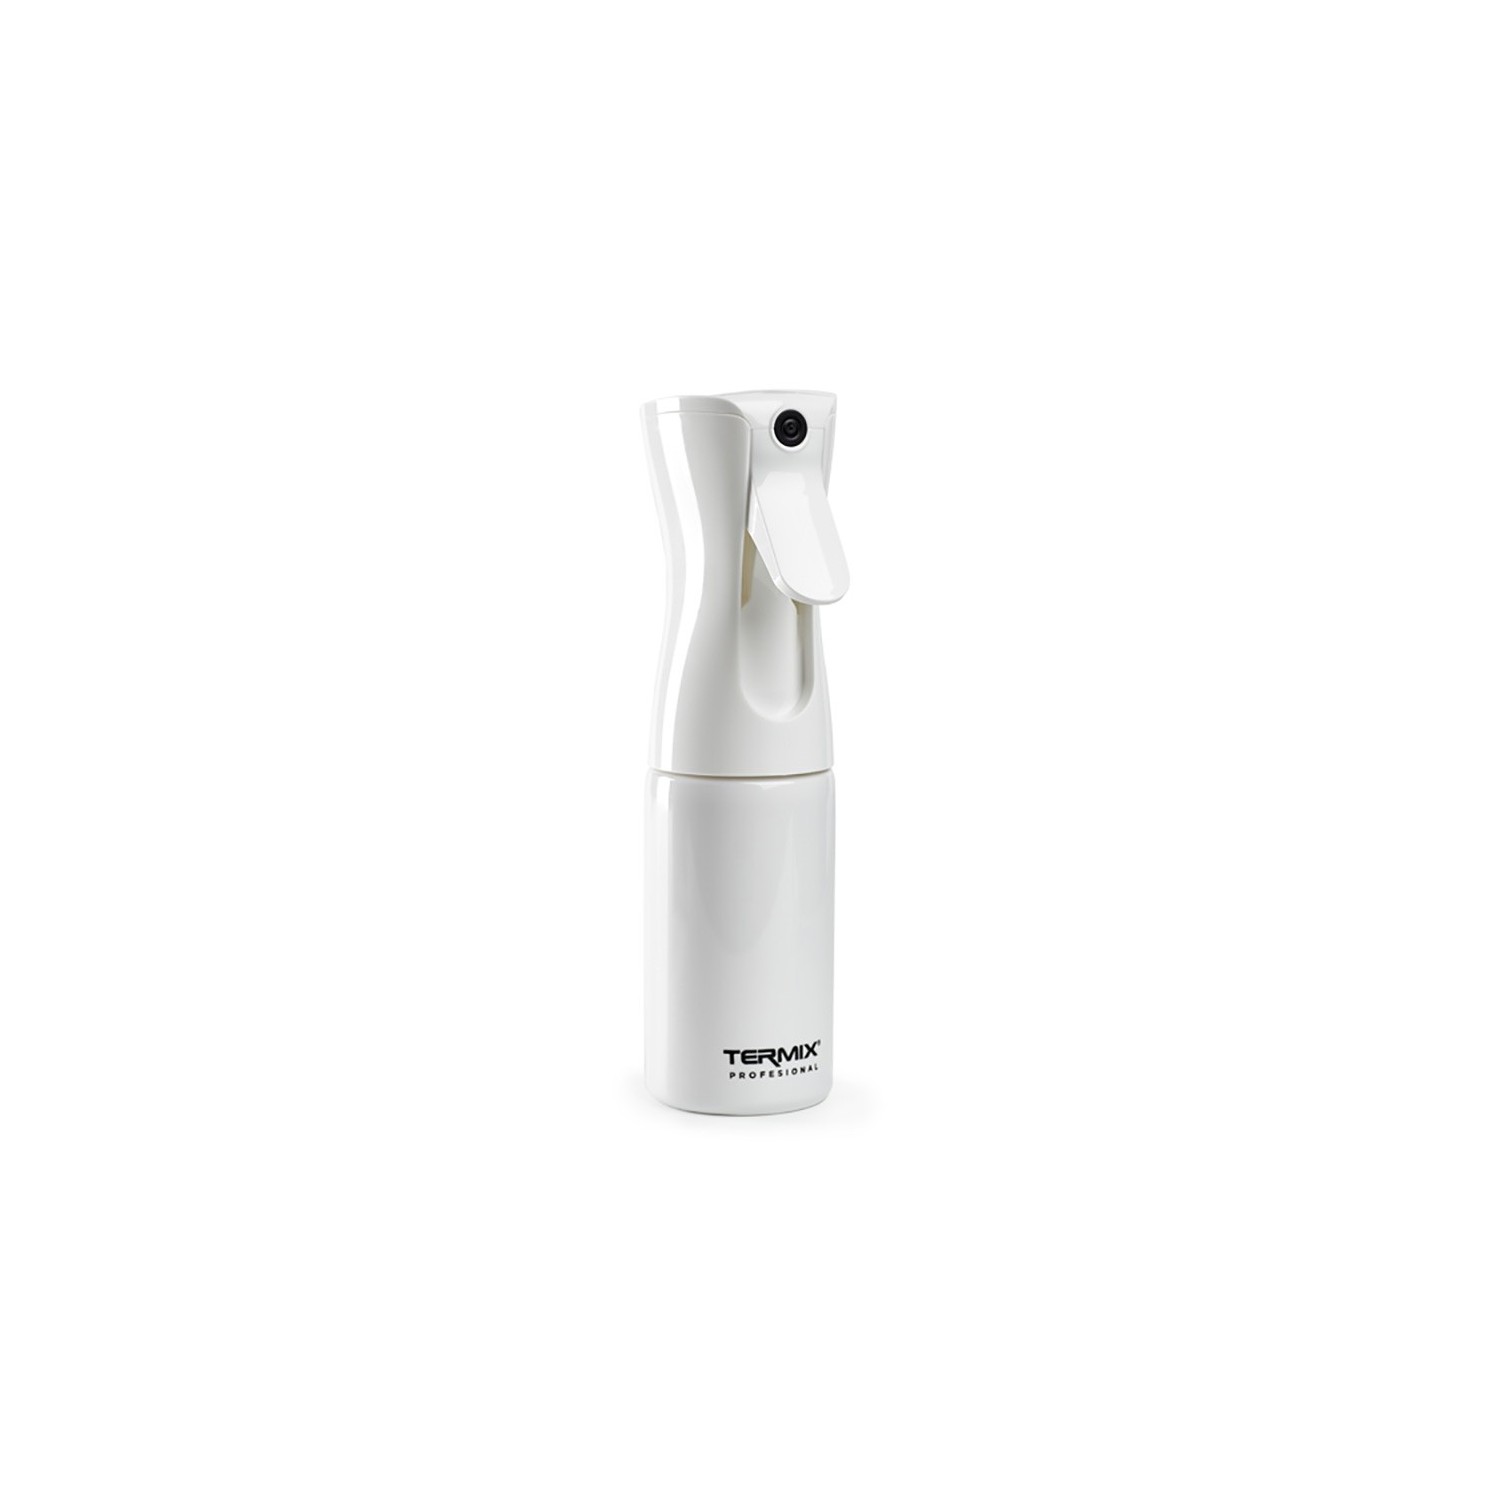 Termix Garrafa Spray Pulverizador Branco 200 ml